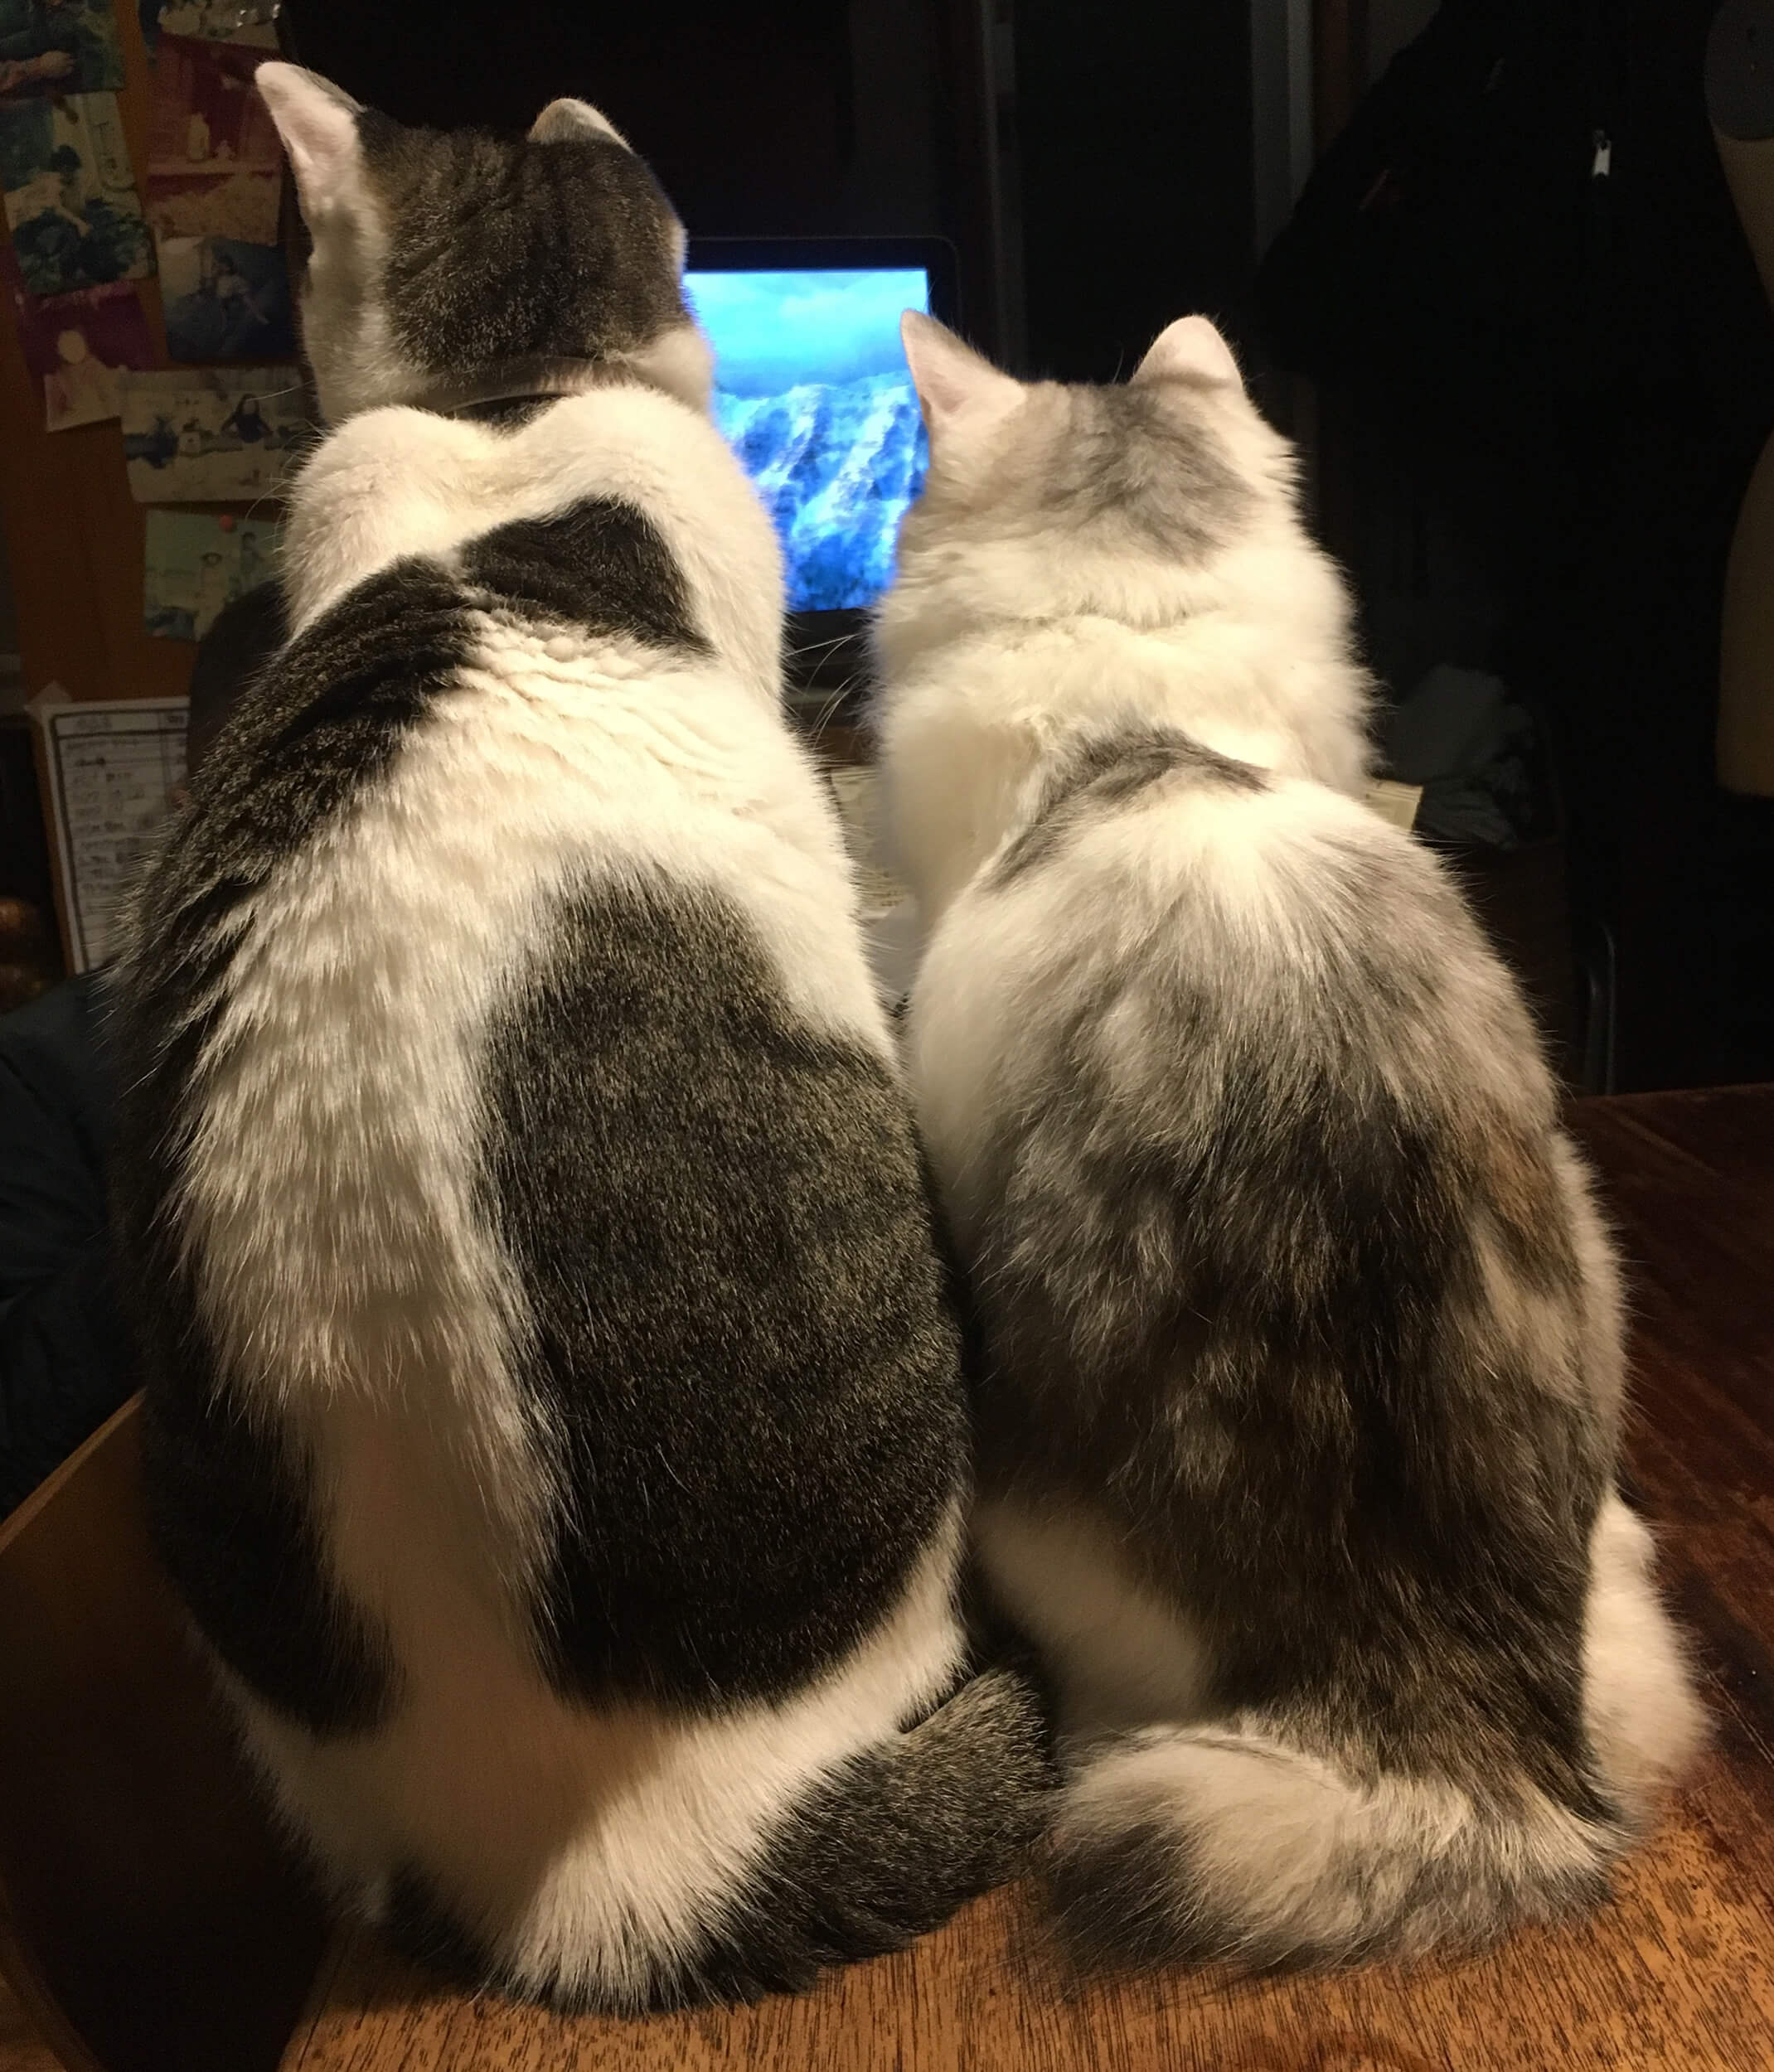 テレビに夢中な猫2匹